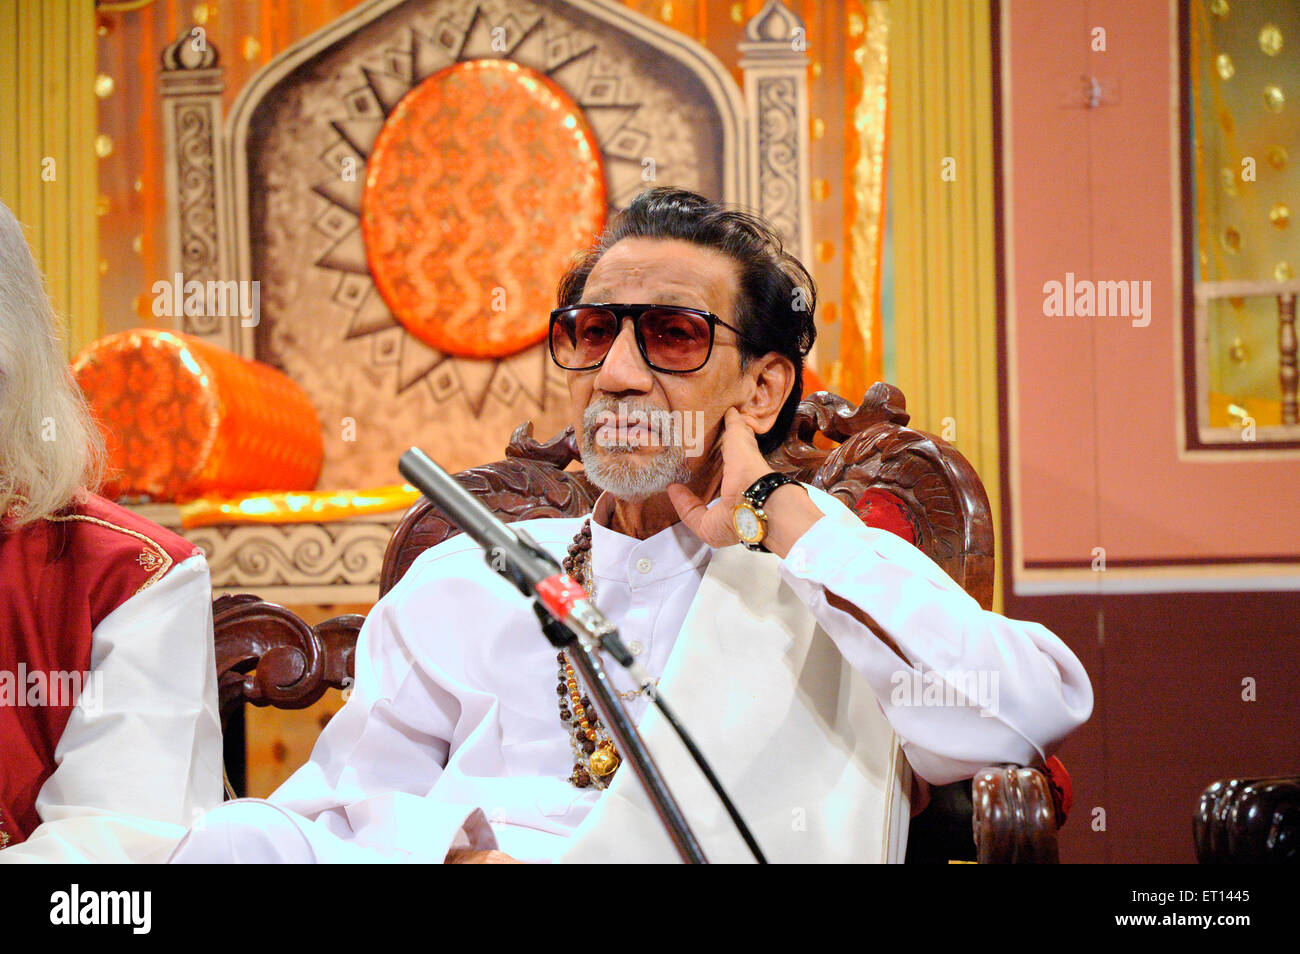 Bal Thackeray, Indian politician, Bal Keshav Thackeray, Founder, Shiv Sena, leader, Maharashtra, India, Asia Stock Photo